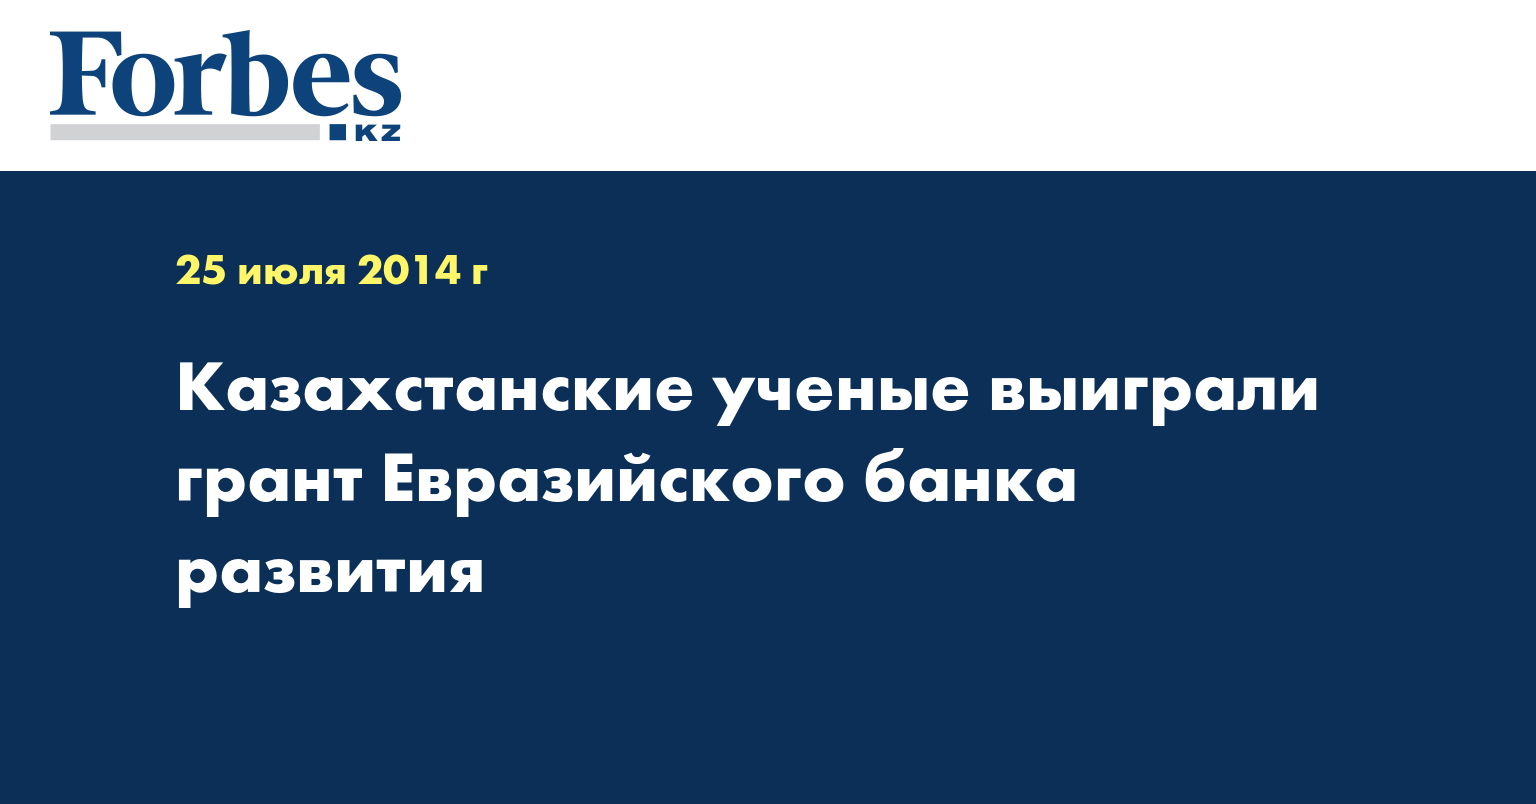 Казахстанские ученые выиграли грант Евразийского банка развития